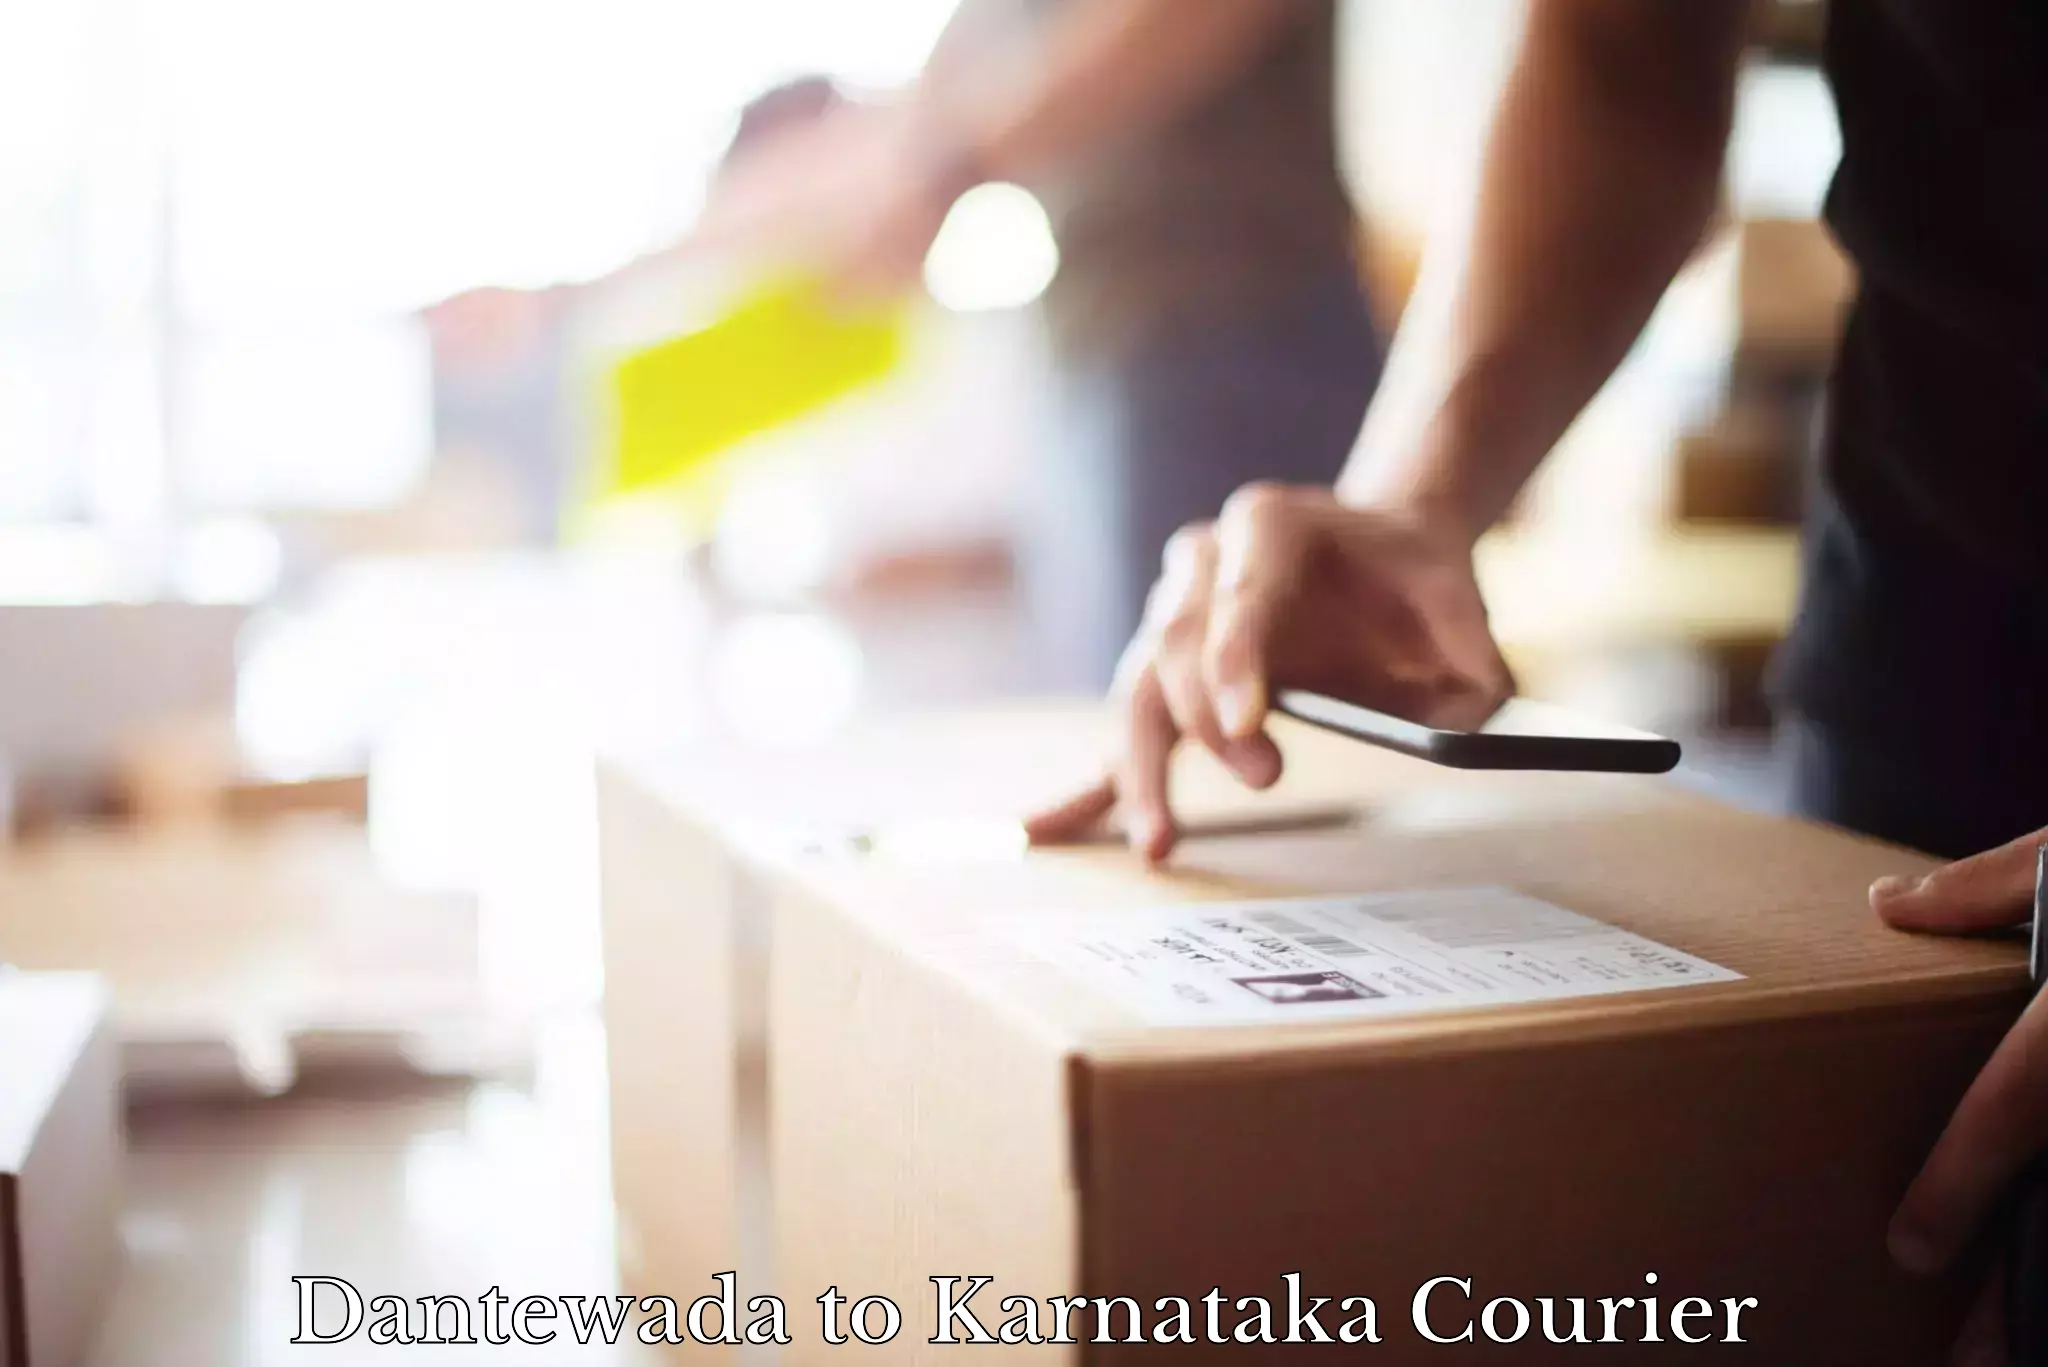 Efficient shipping platforms Dantewada to Karnataka